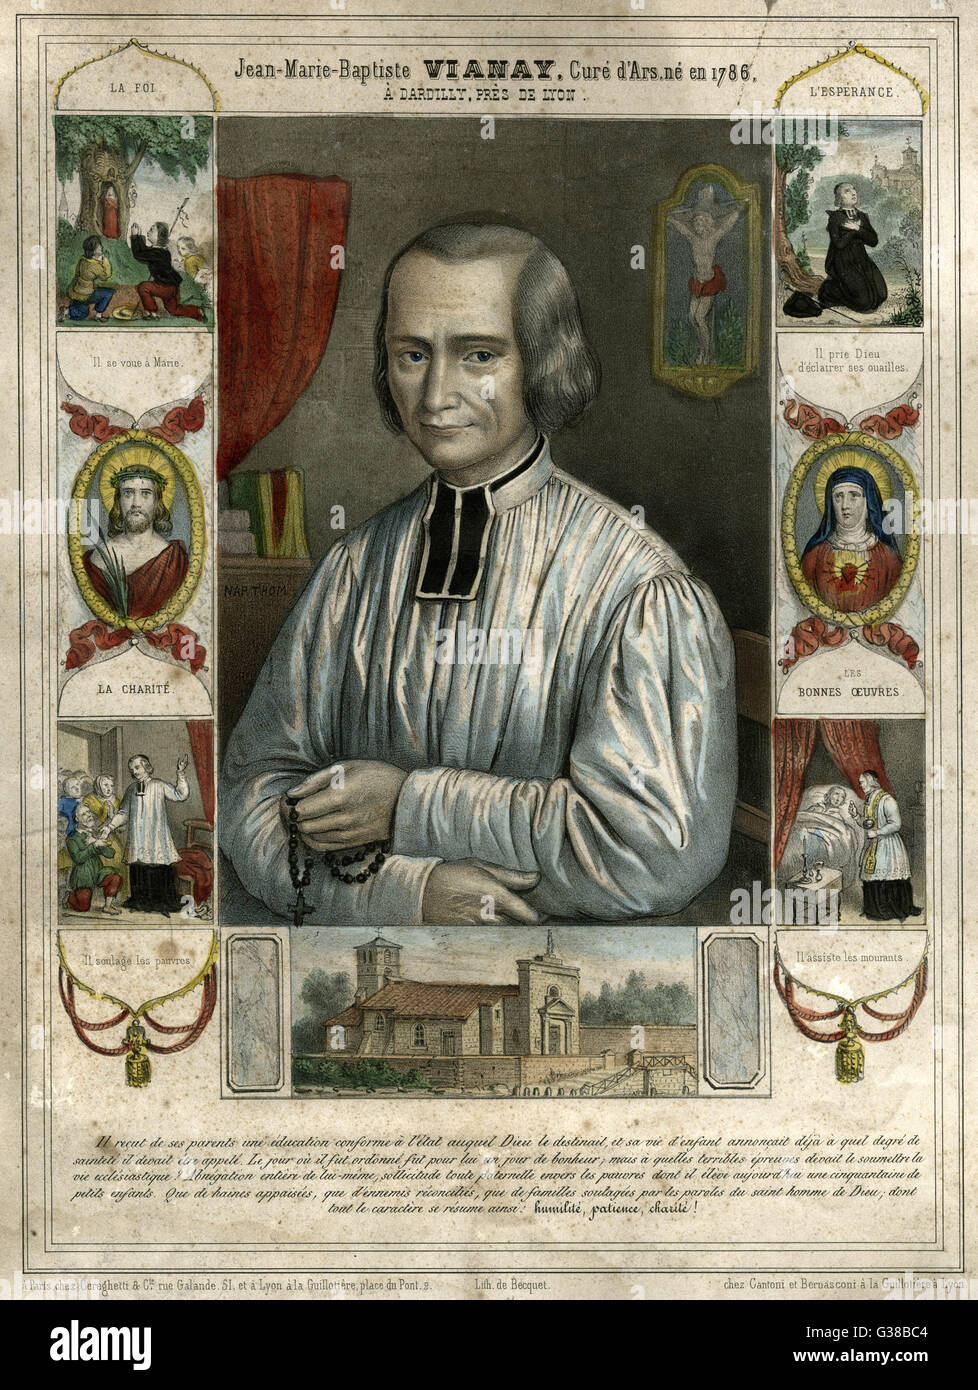 JEAN-BAPTISTE VIANNEY, bekannt als der Heilung von Ars - französischer Priester, bekannt für seine guten Werke und einfachen Lebensstil, und wird schrecklich gequält von Dämonen Datum: 1786-1859 Stockfoto